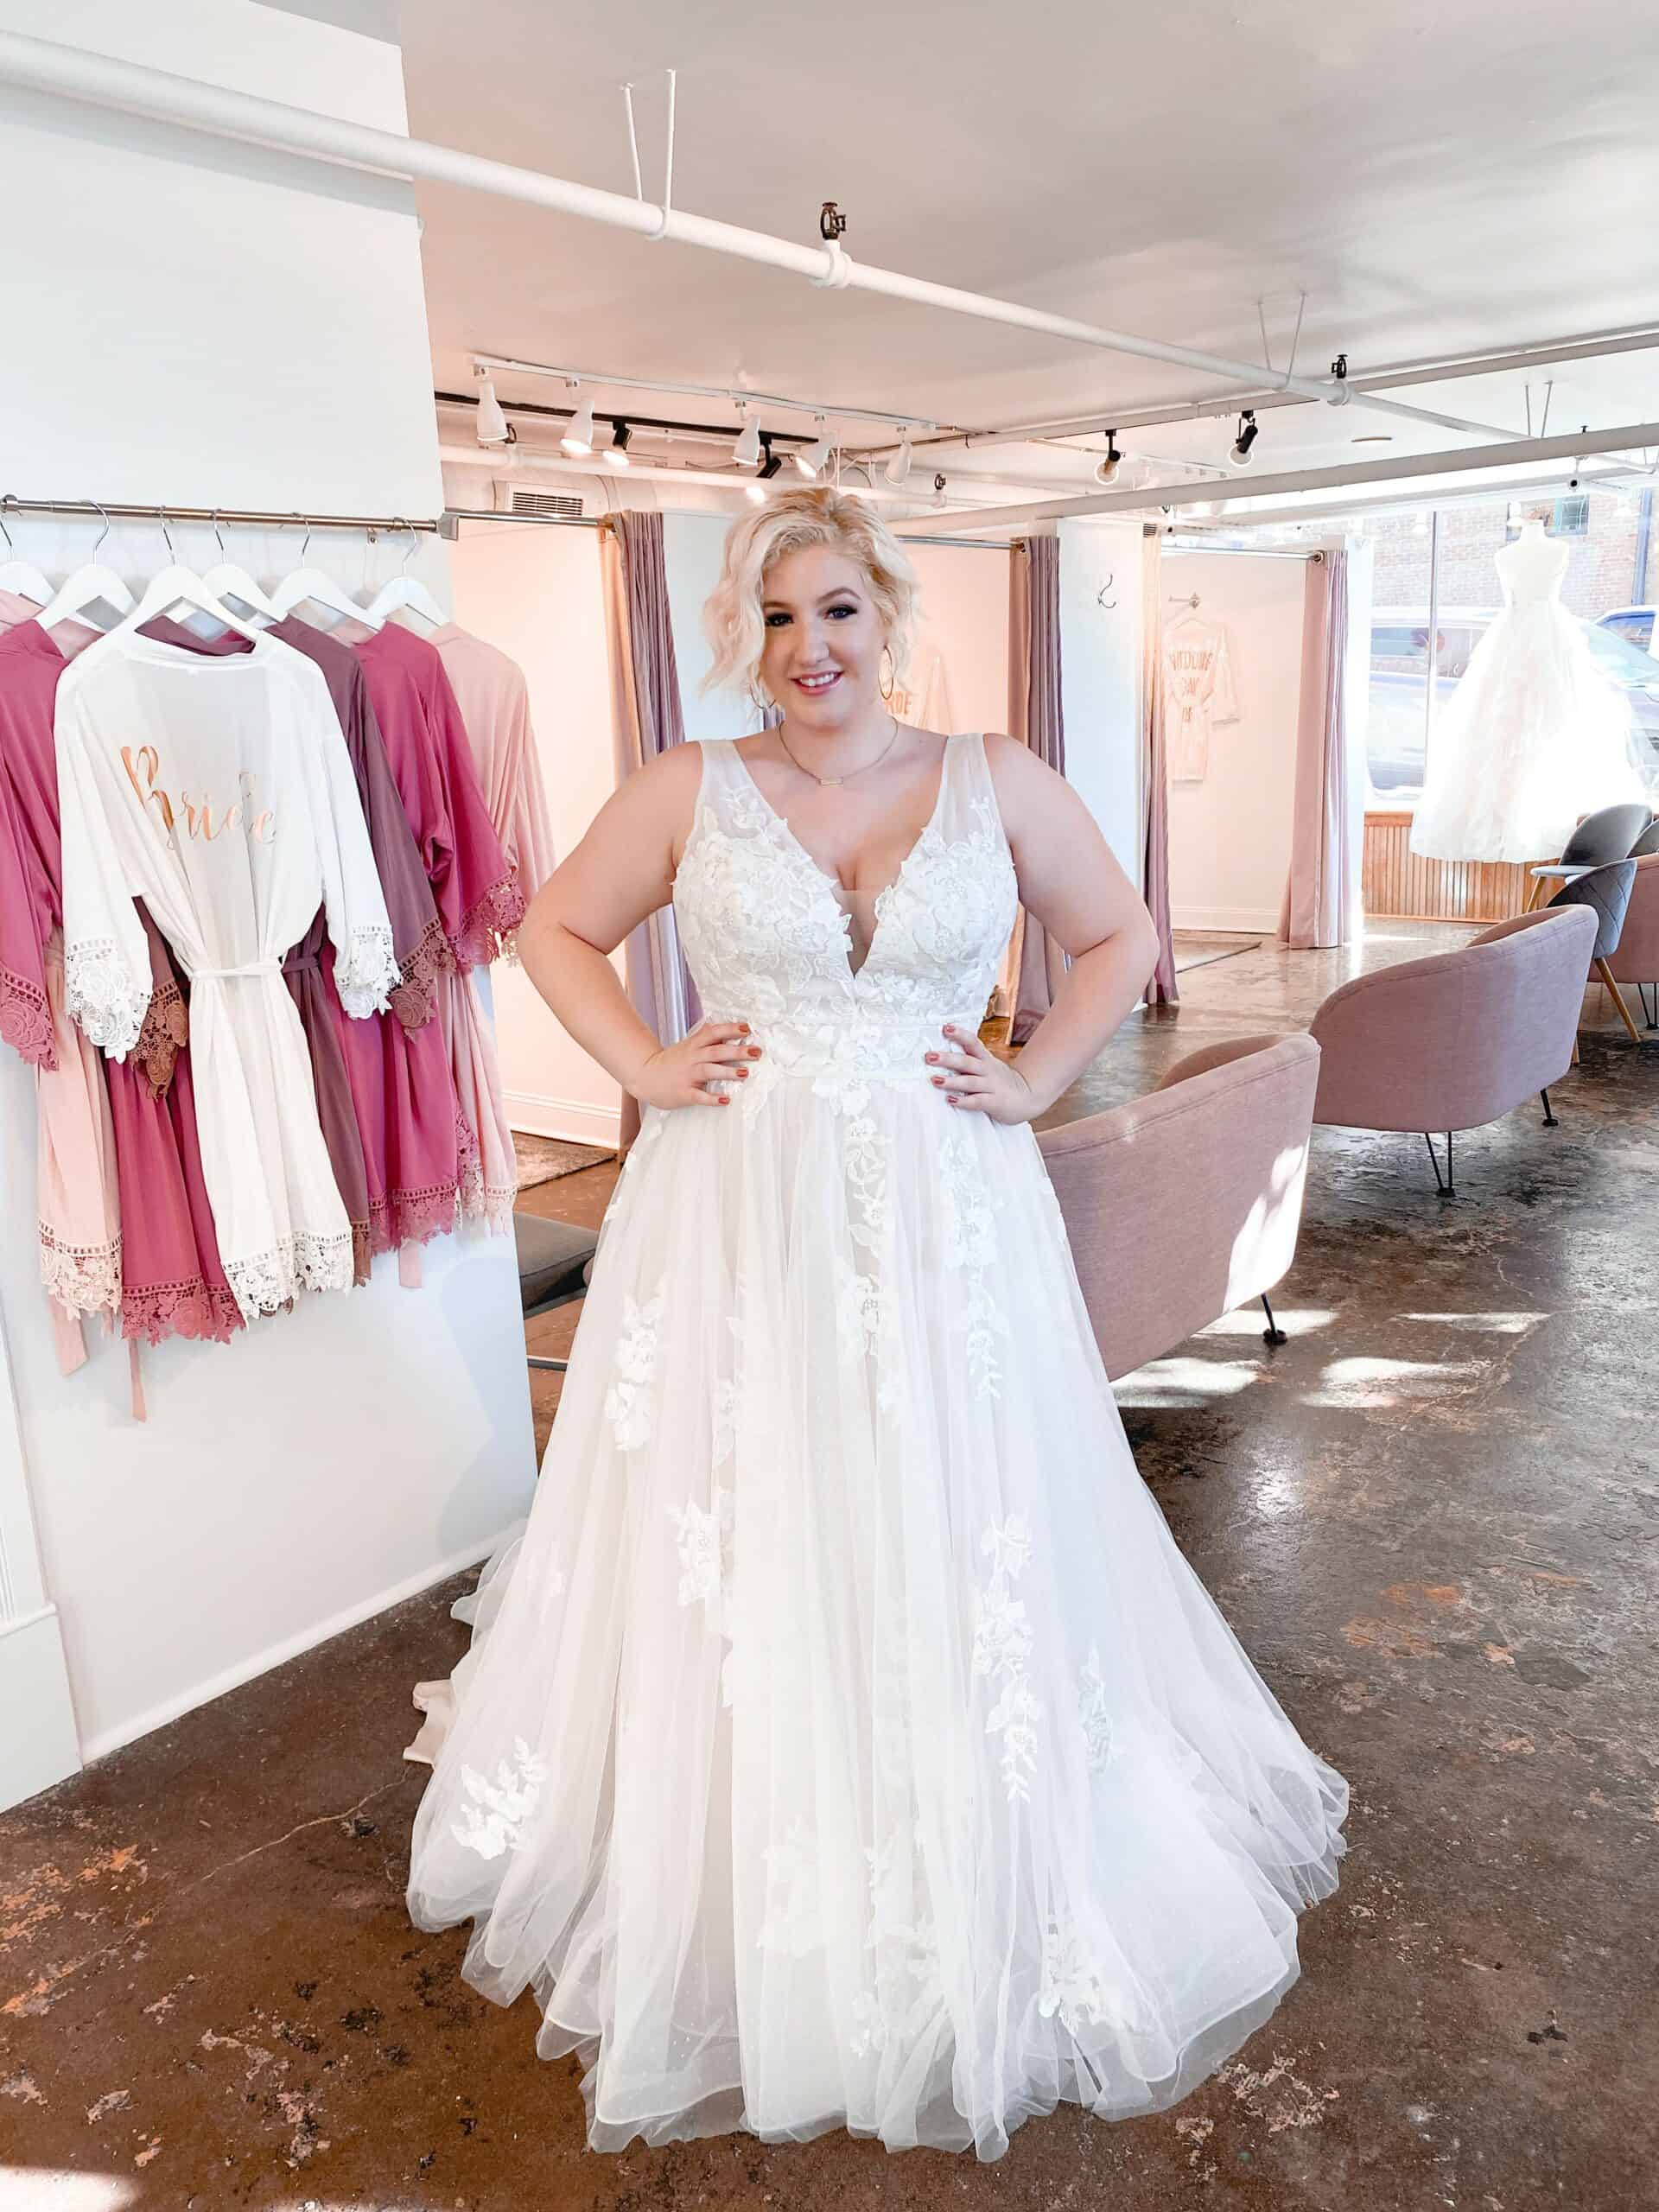 Eksperiment Komprimere Tag det op 10 Plus-Size Wedding Dress Shopping Tips for Curvy Brides | Savvy Bridal